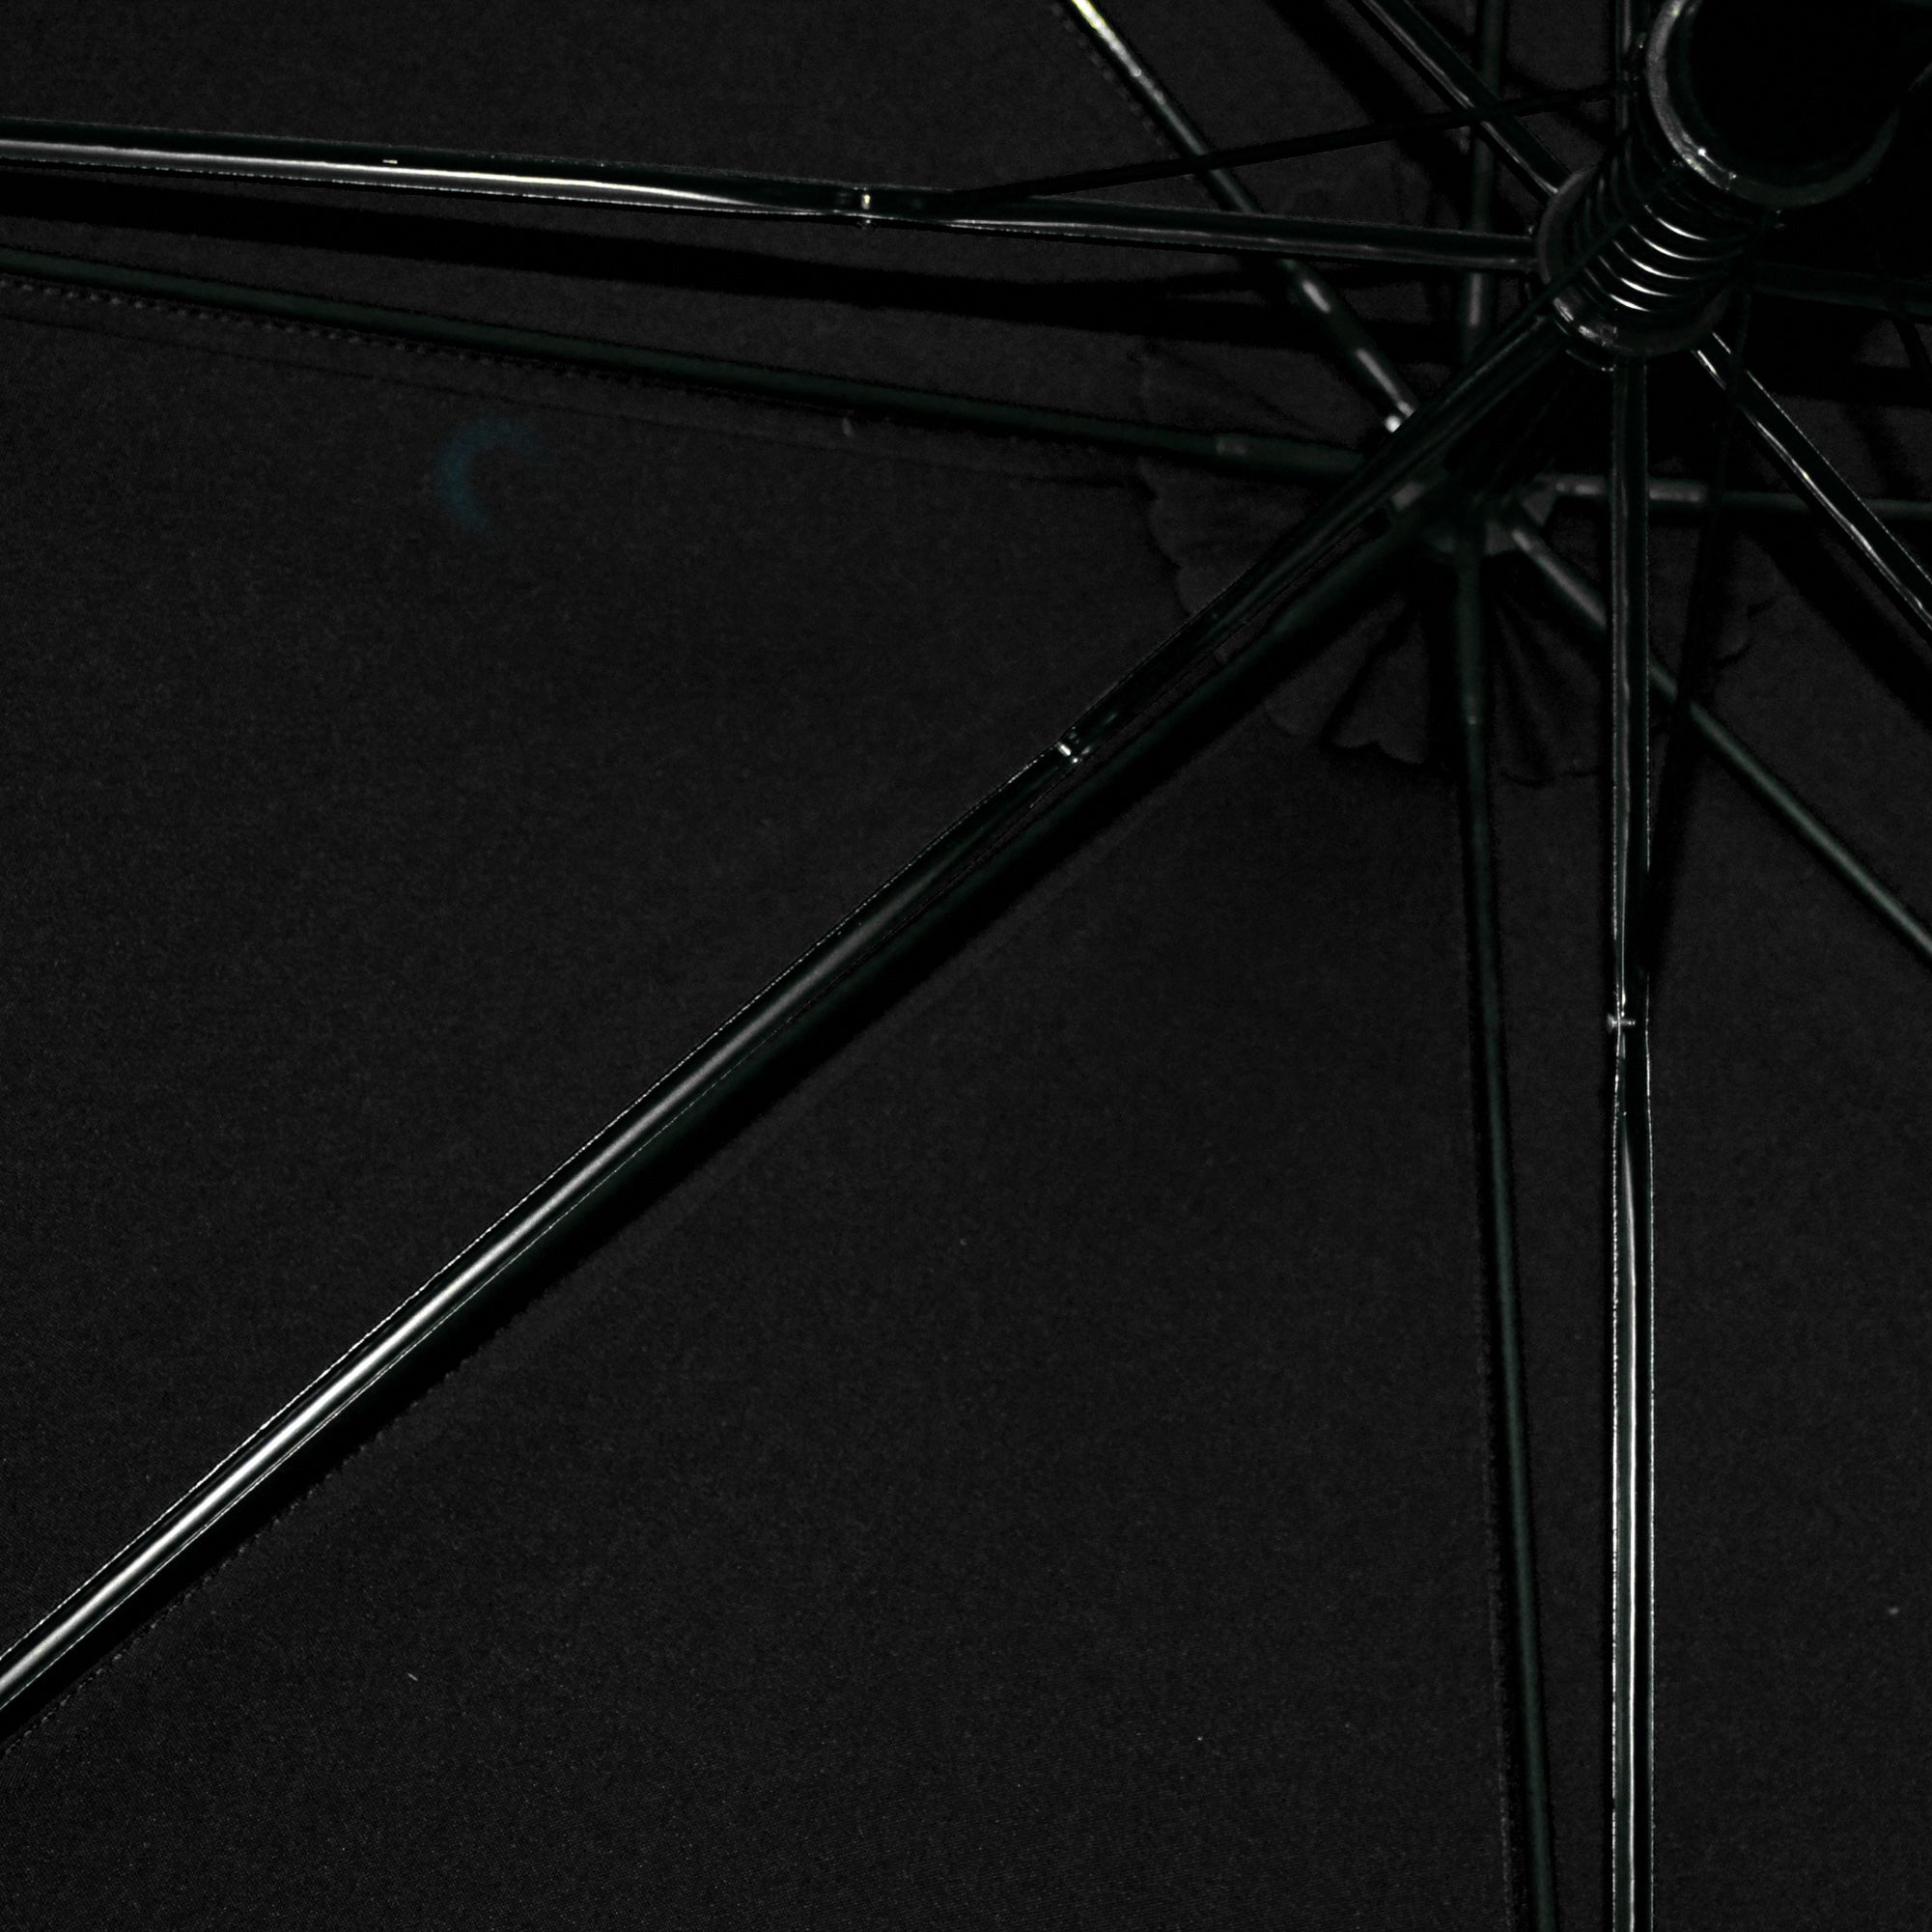 Giordano Long Umbrella